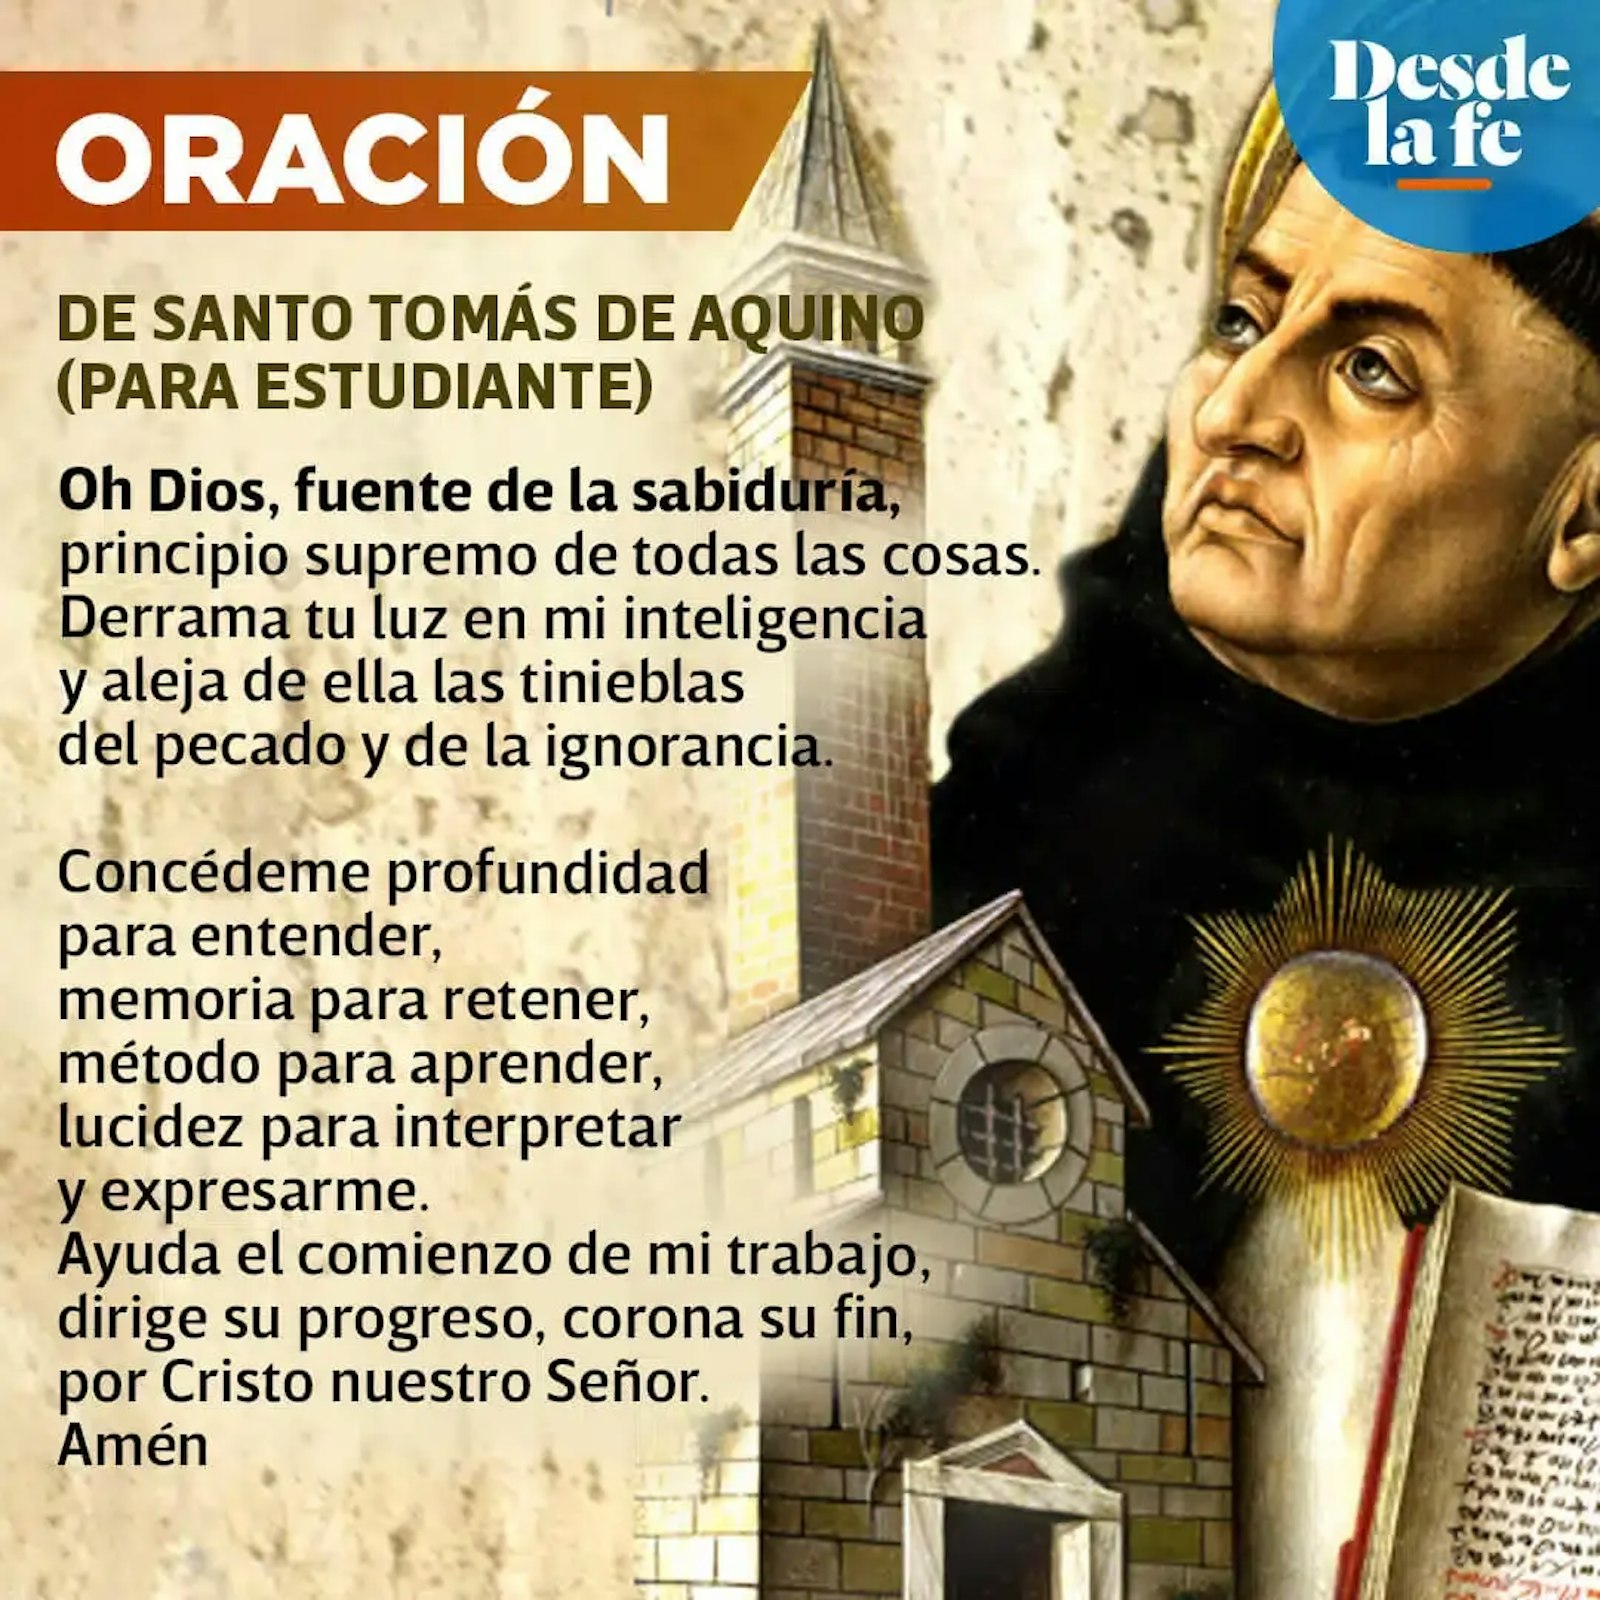 Oración para estudiantes de Santo Tomás de Aquino.